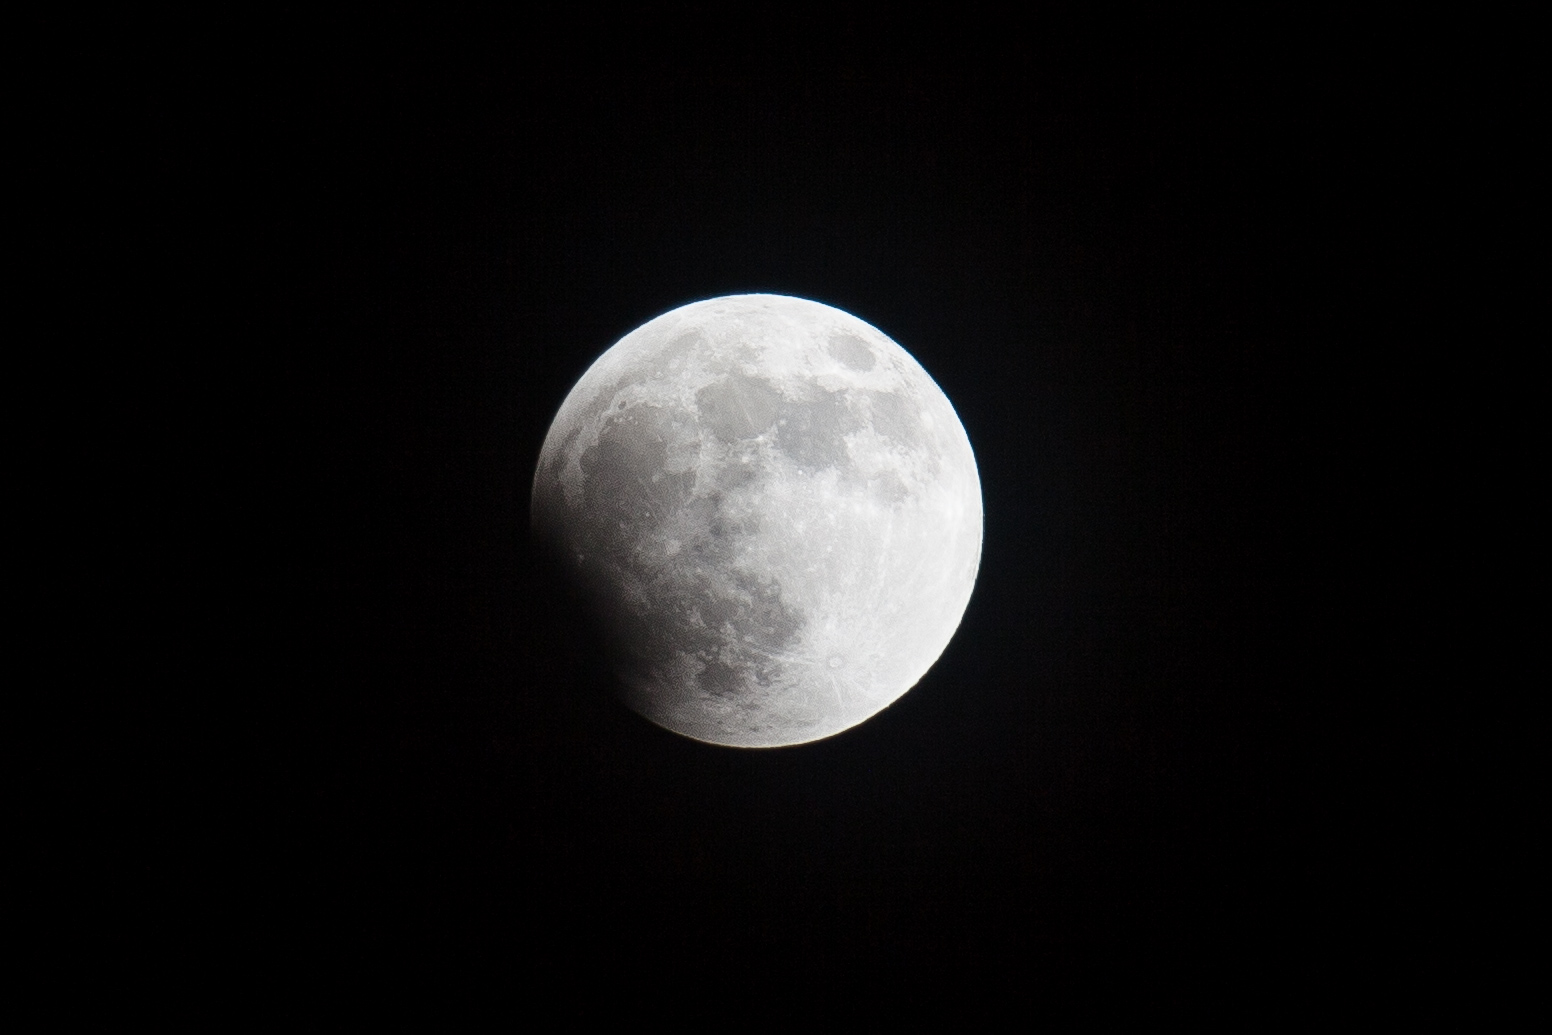 La parte más oscura de la sombra de la Tierra (conocida como umbra) se desplaza sobre el disco lunar, diez minutos depués del inicio de la fase parcial del eclipse.